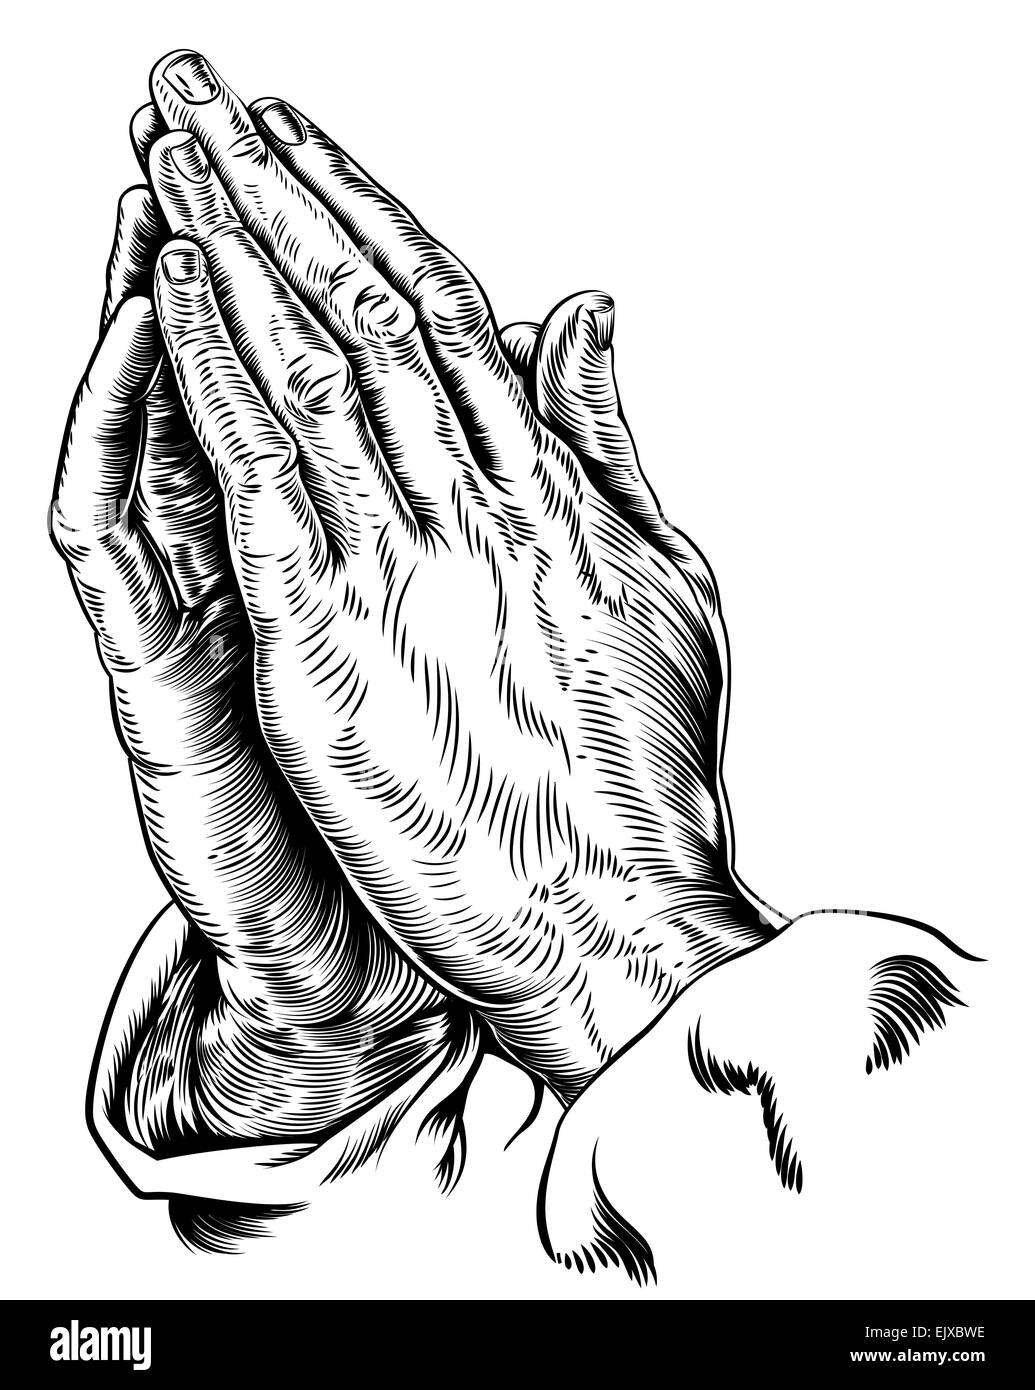 Una illustrazione vettoriale di pregare mani ispirato da Albrecht Durer s1508 studio Foto Stock